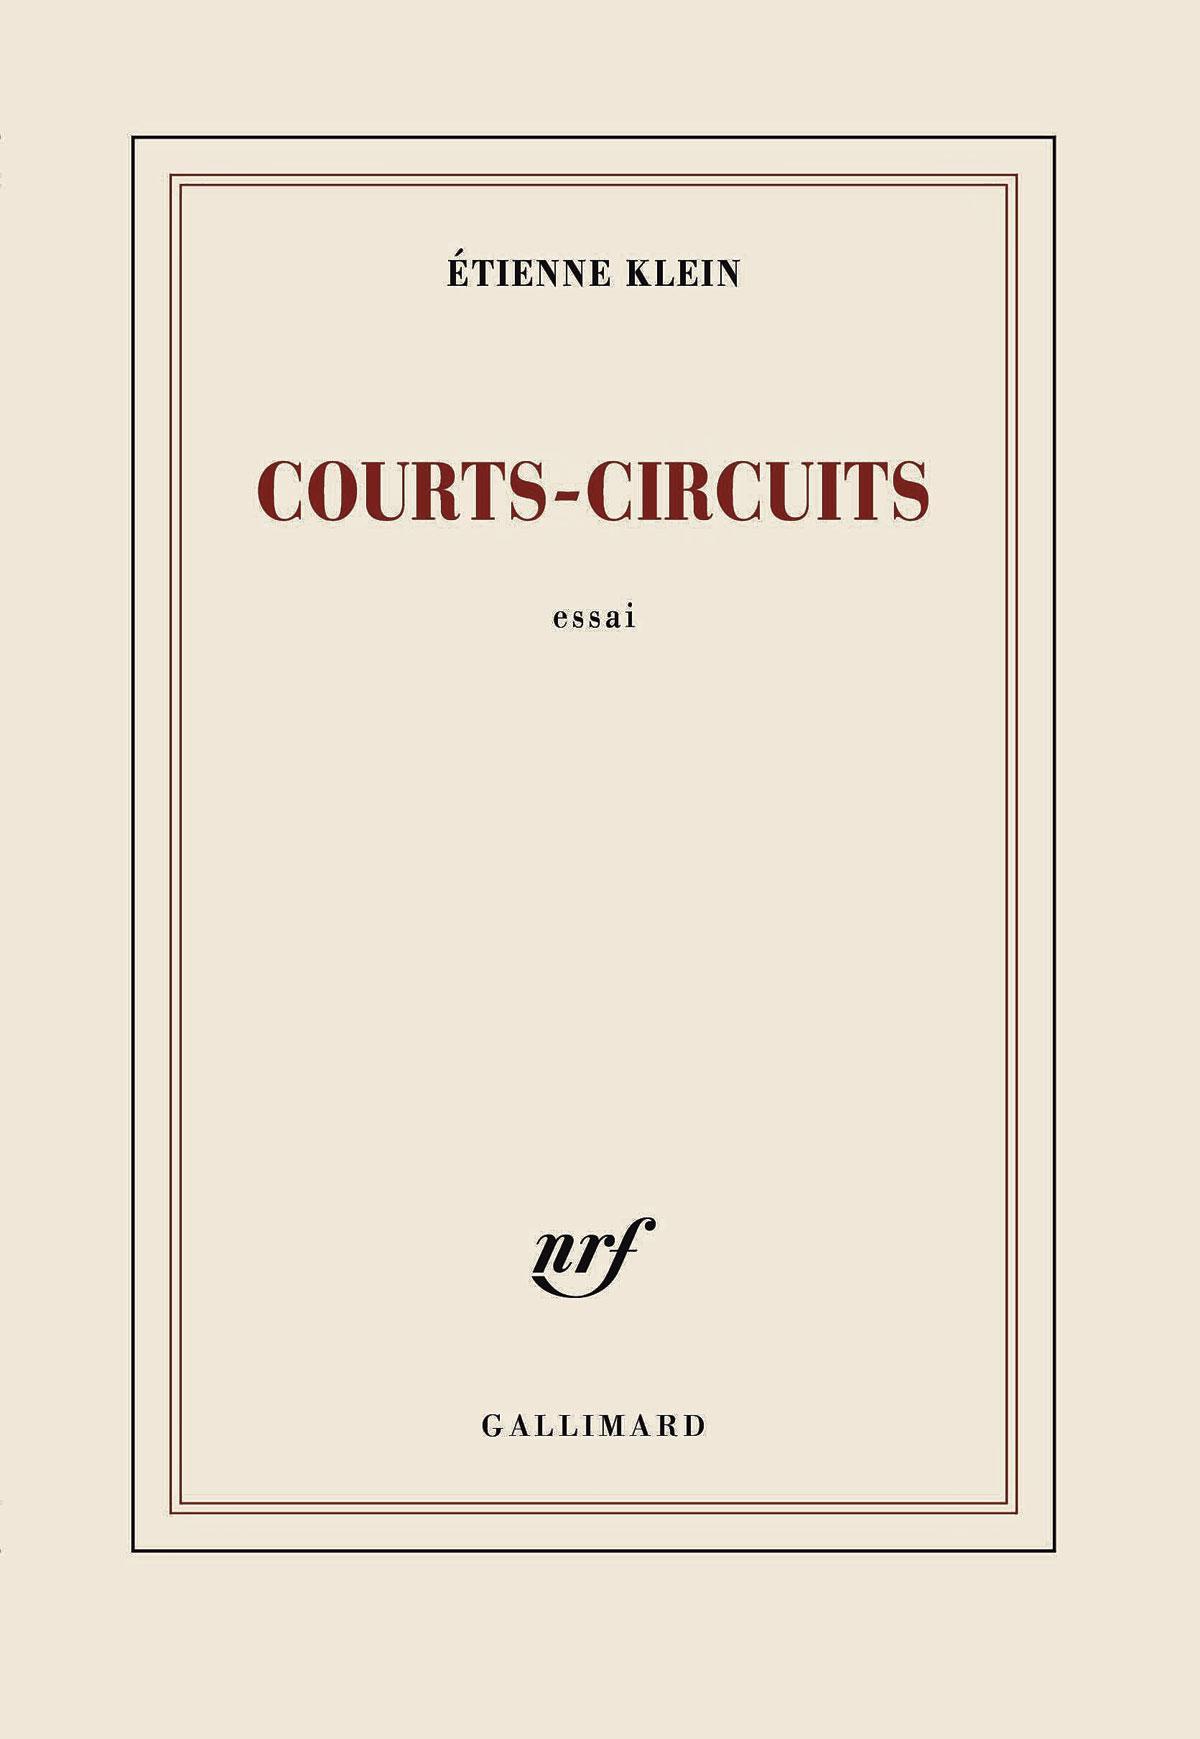 (1) Courts-circuits, par Etienne Klein, Gallimard, 216 p.